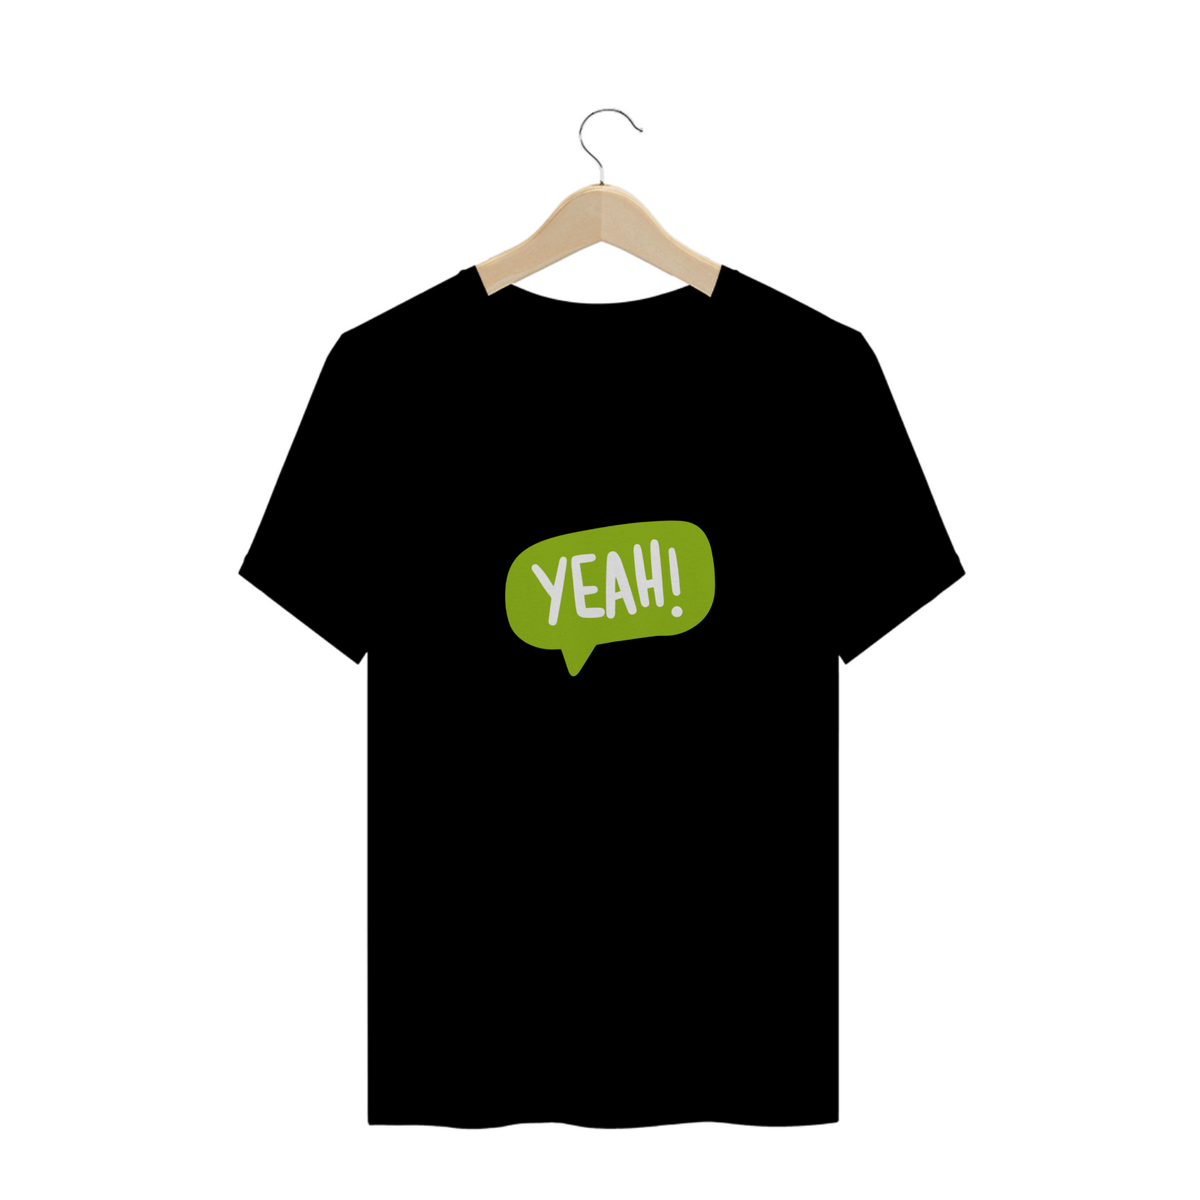 Nome do produto: T-shirt yeah